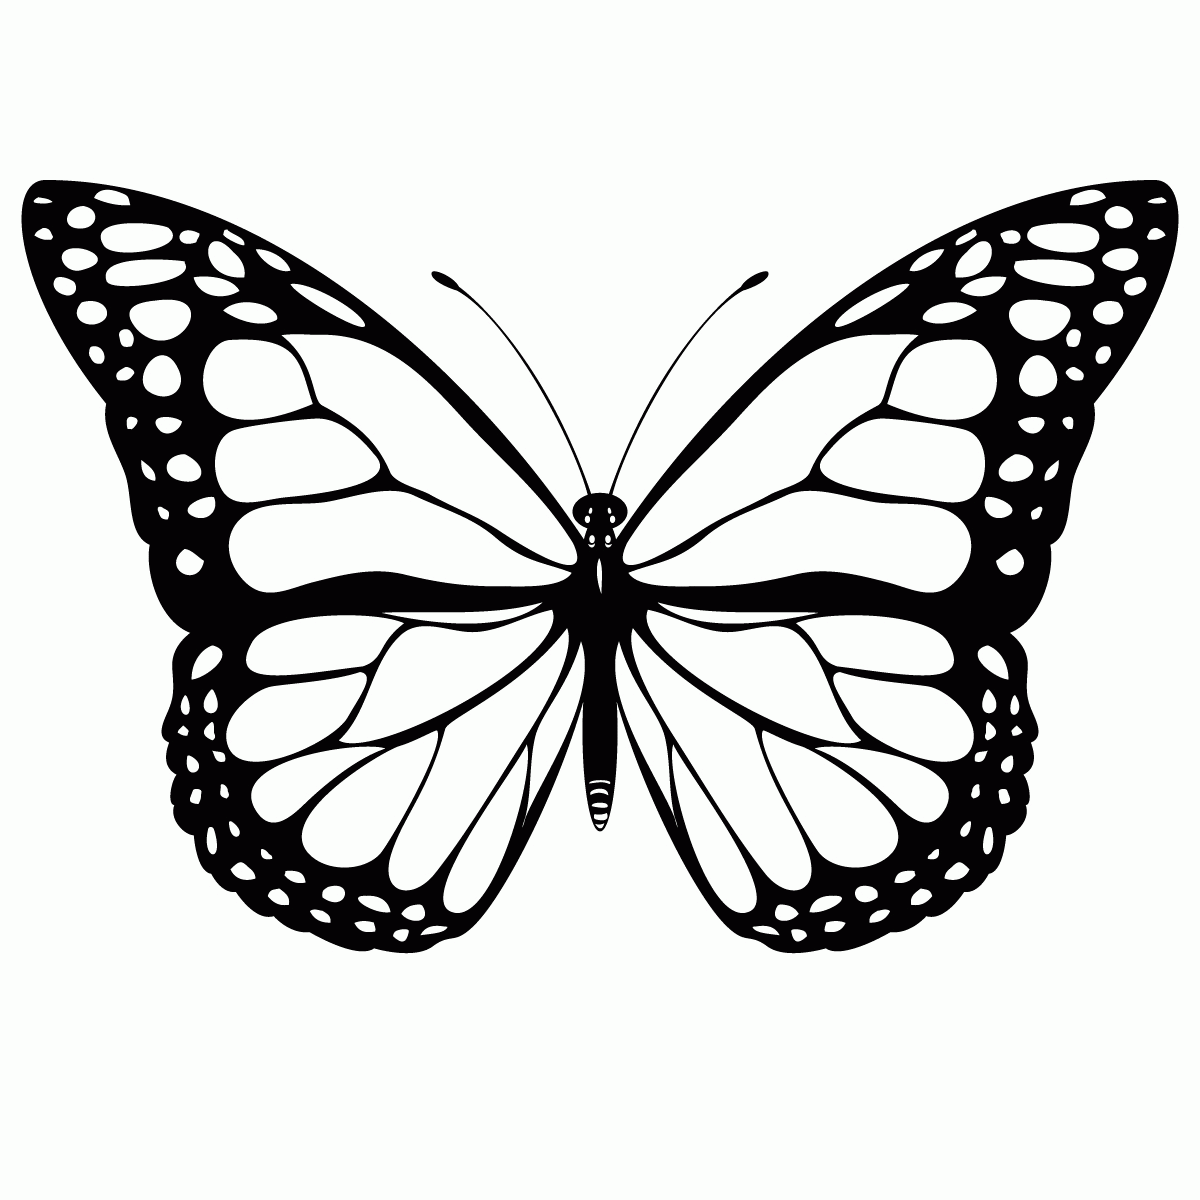 Printables - Butterflies | Butterfly Template ...